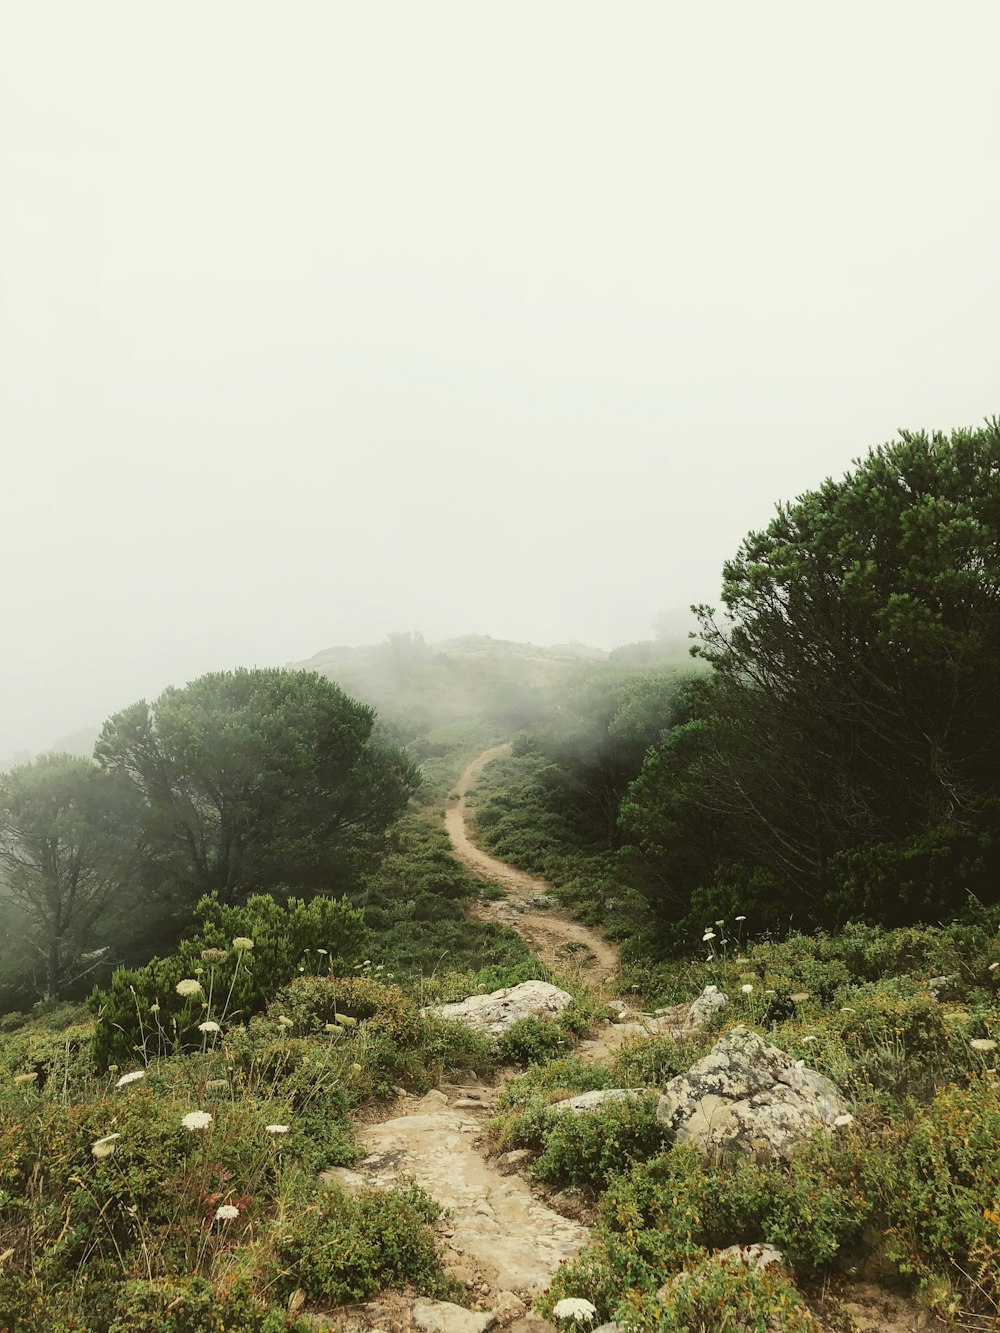 La route rugueuse entoure les arbres de brouillards